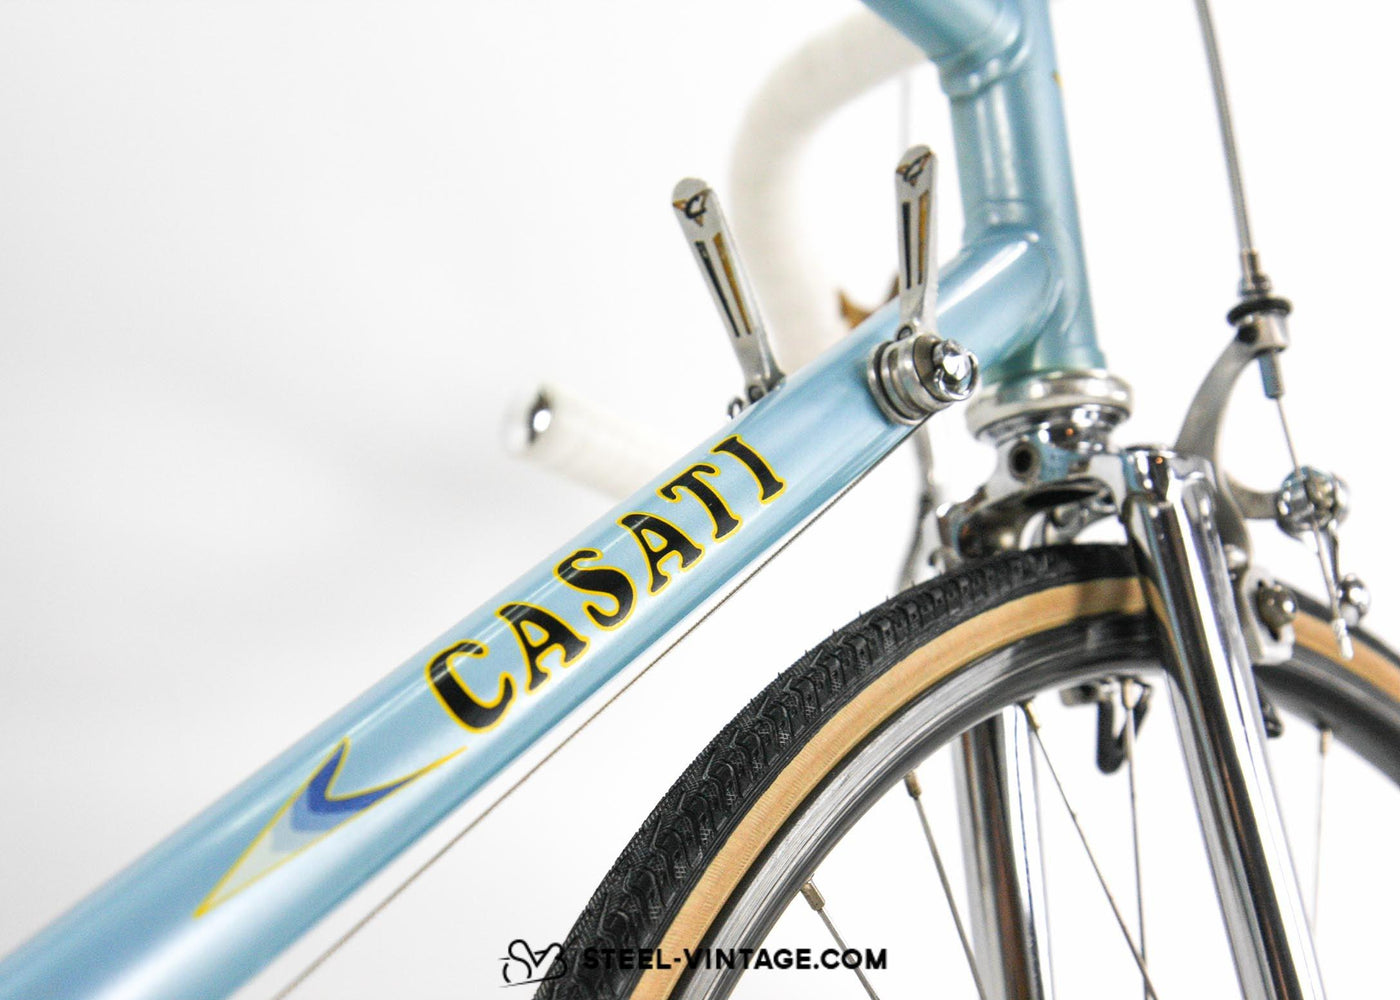 Steel Vintage Bikes - Casati Monza クラシックロードバイク 1980年代